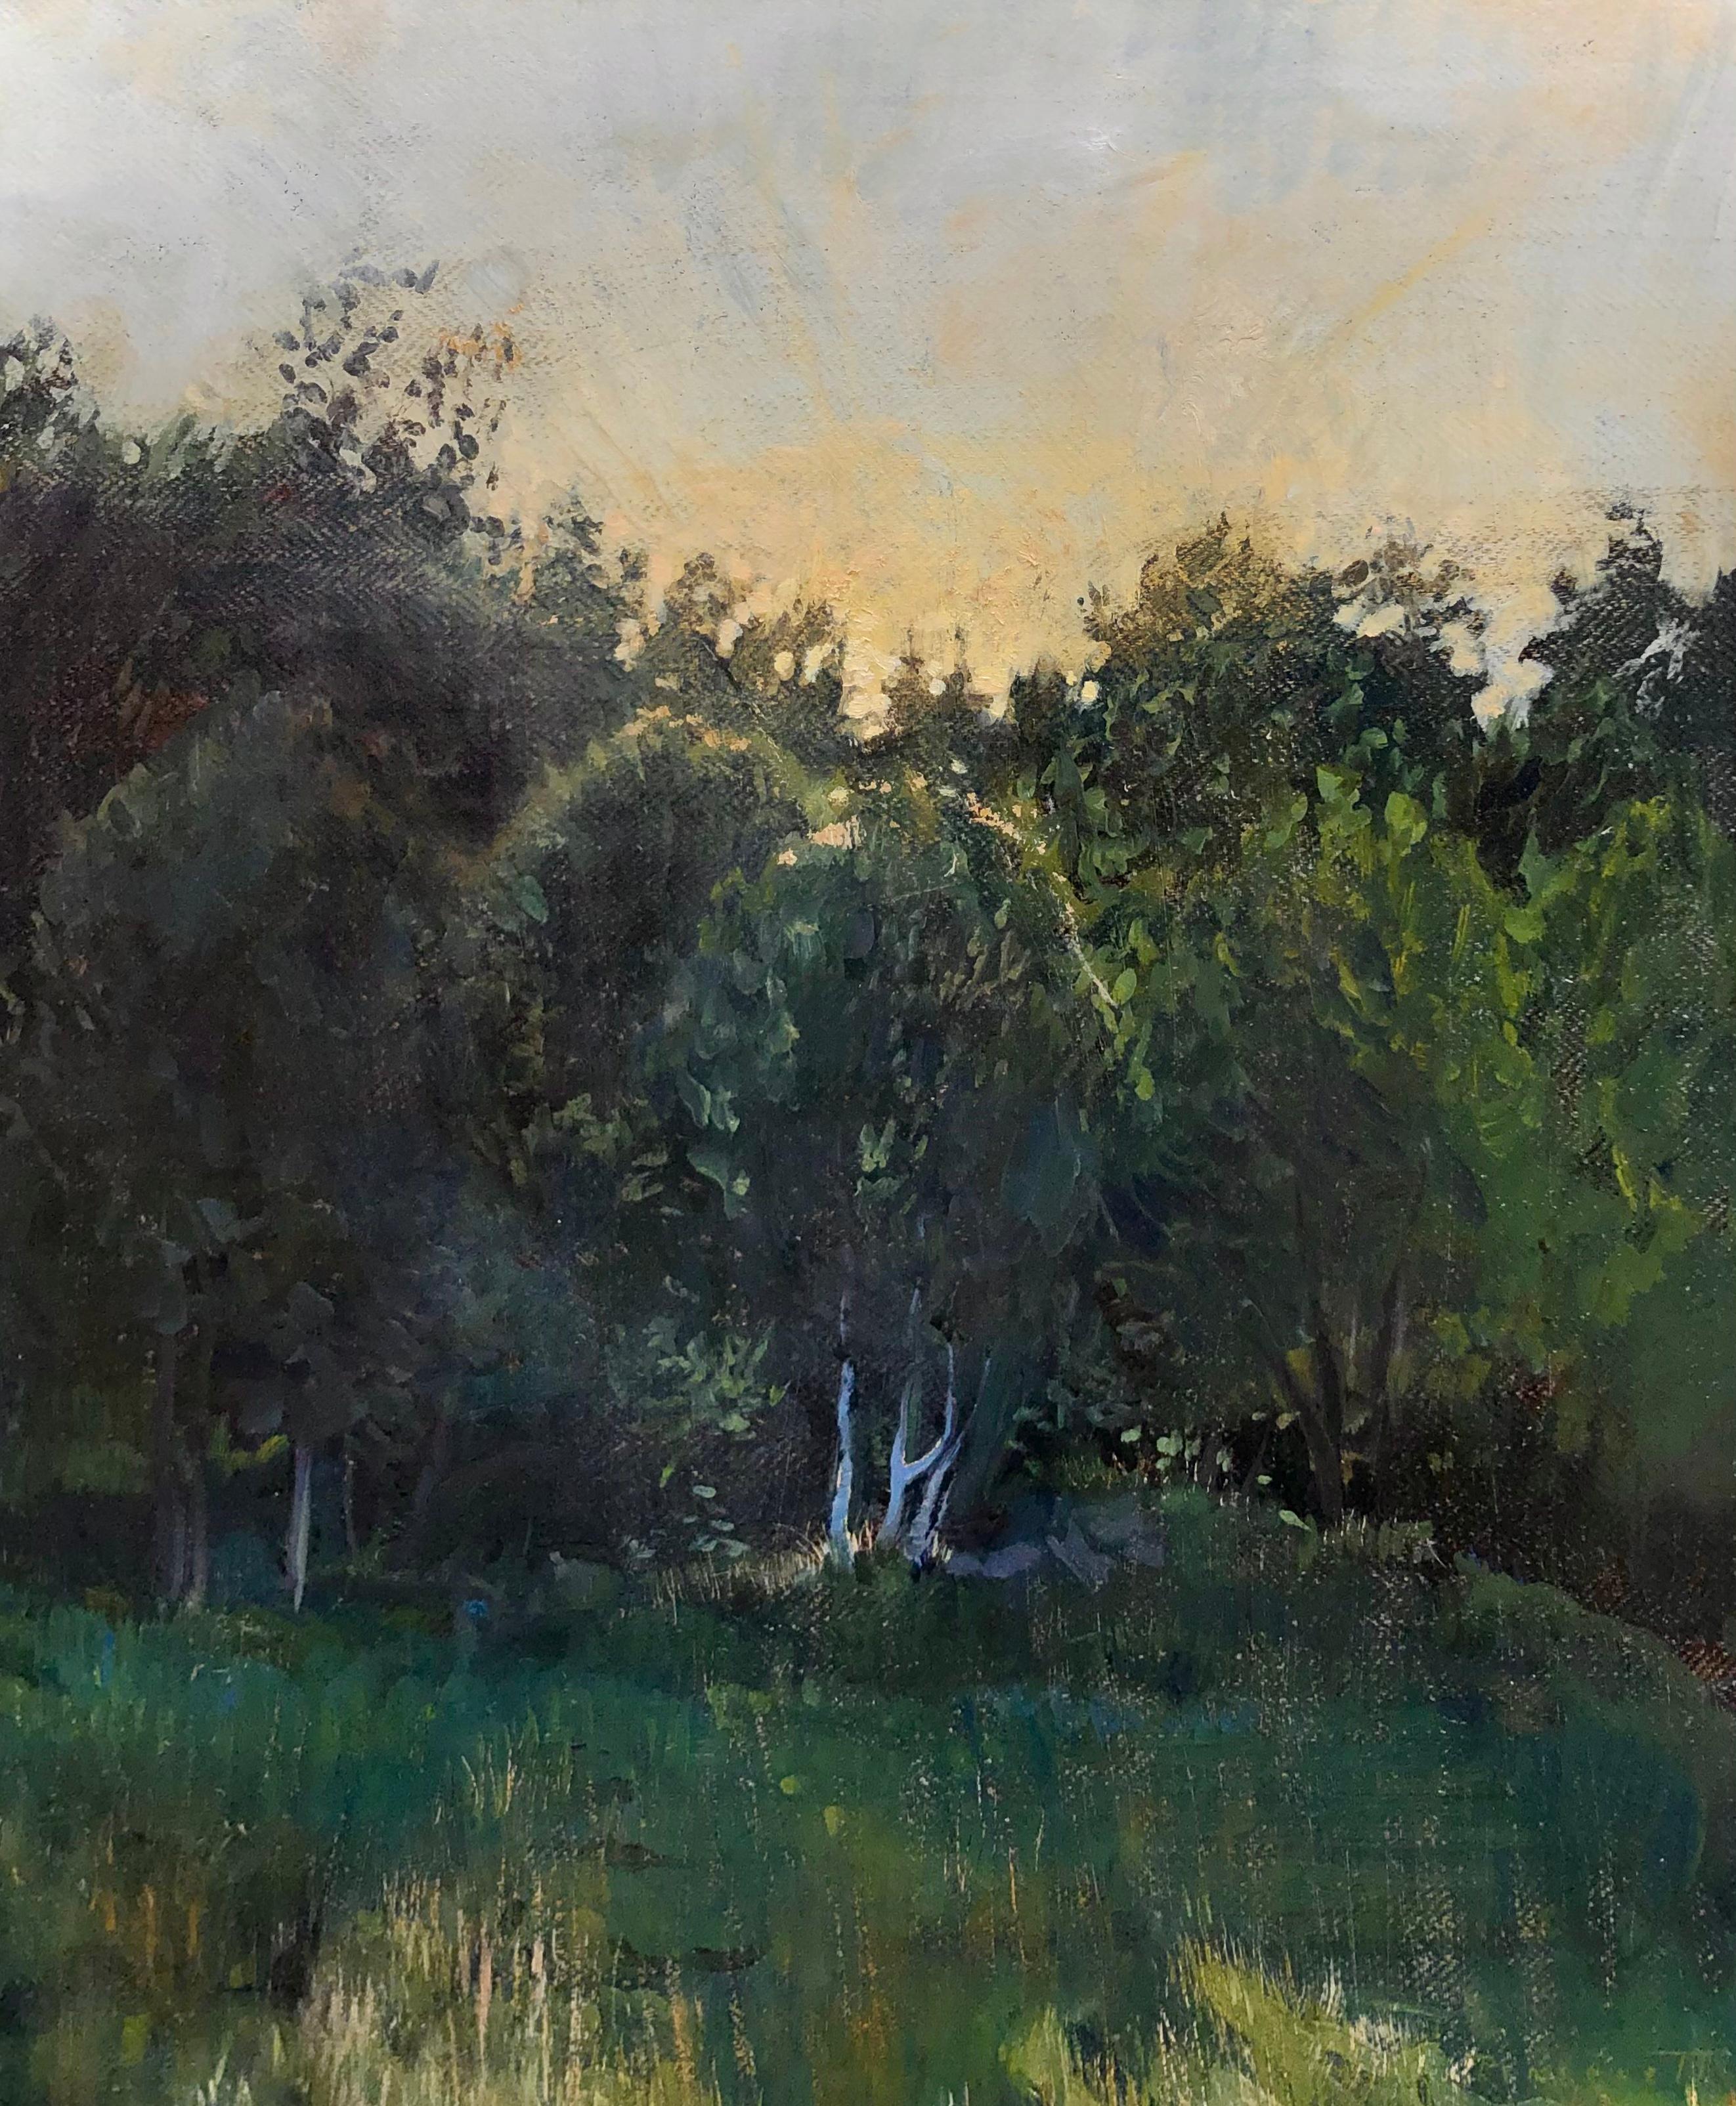 "Norwegian Sunset" peinture contemporaine tonaliste - le soleil se couche au-delà des arbres verts